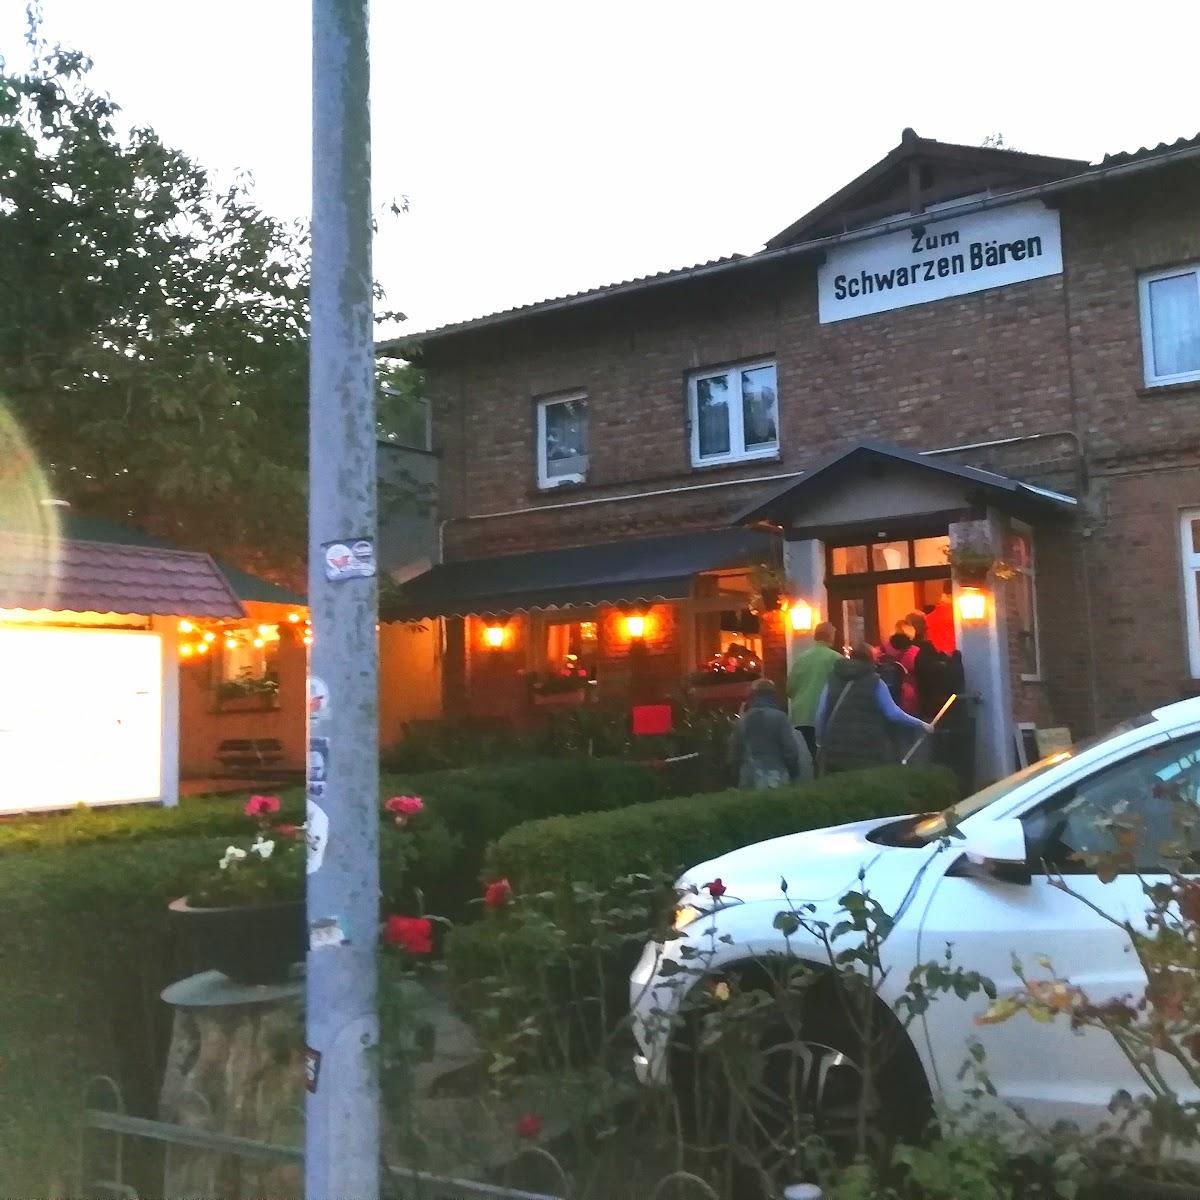 Restaurant "Zum Schwarzen Bären" in Putbus